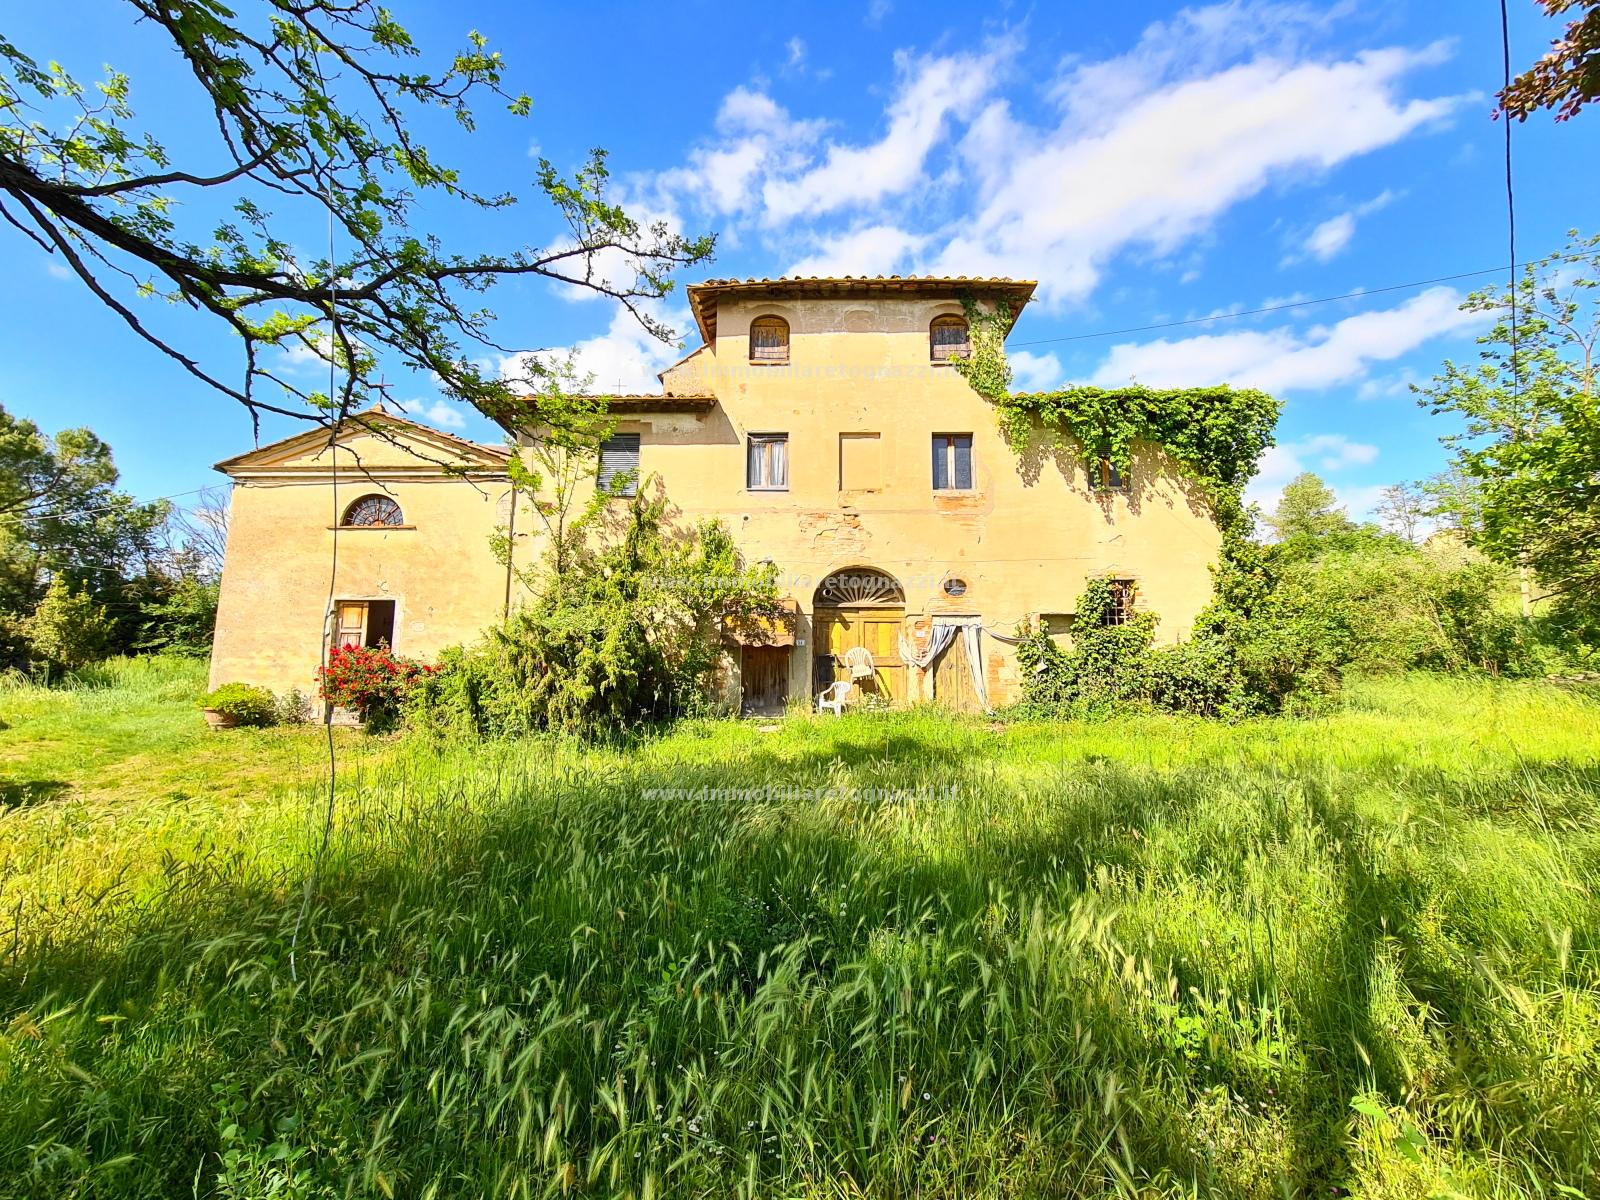 Rustico / Casale in vendita a Castelfiorentino, 10 locali, prezzo € 250.000 | PortaleAgenzieImmobiliari.it